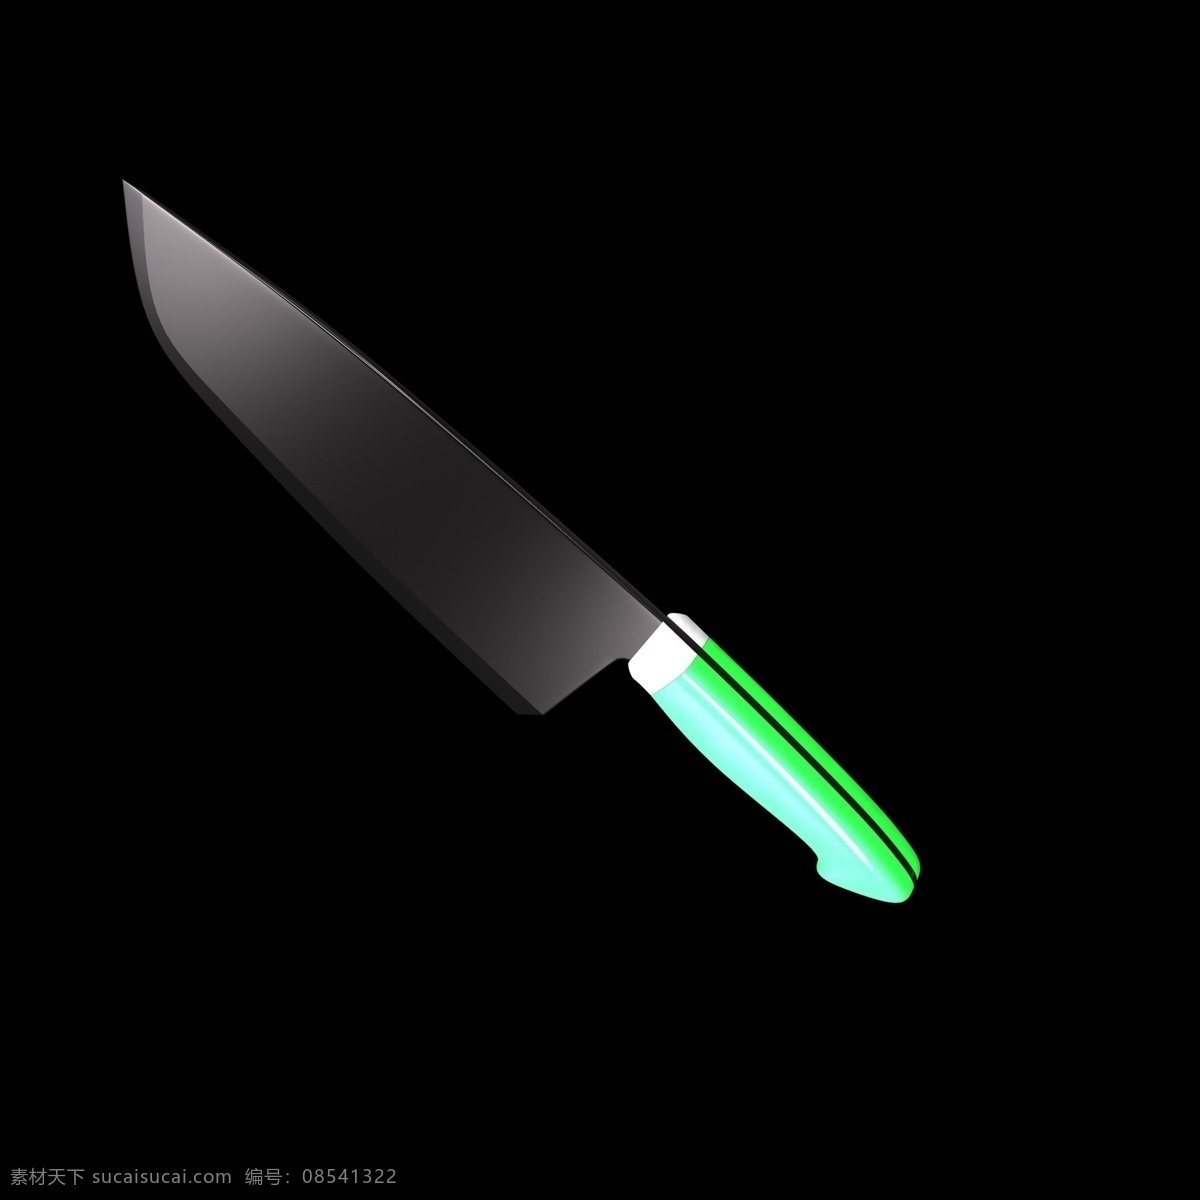 暖色 刀具 插图 装饰 刀子 创意刀具 个性刀具 创意刀型插图 c4d 立体 暖色系 厨房用具 小刀